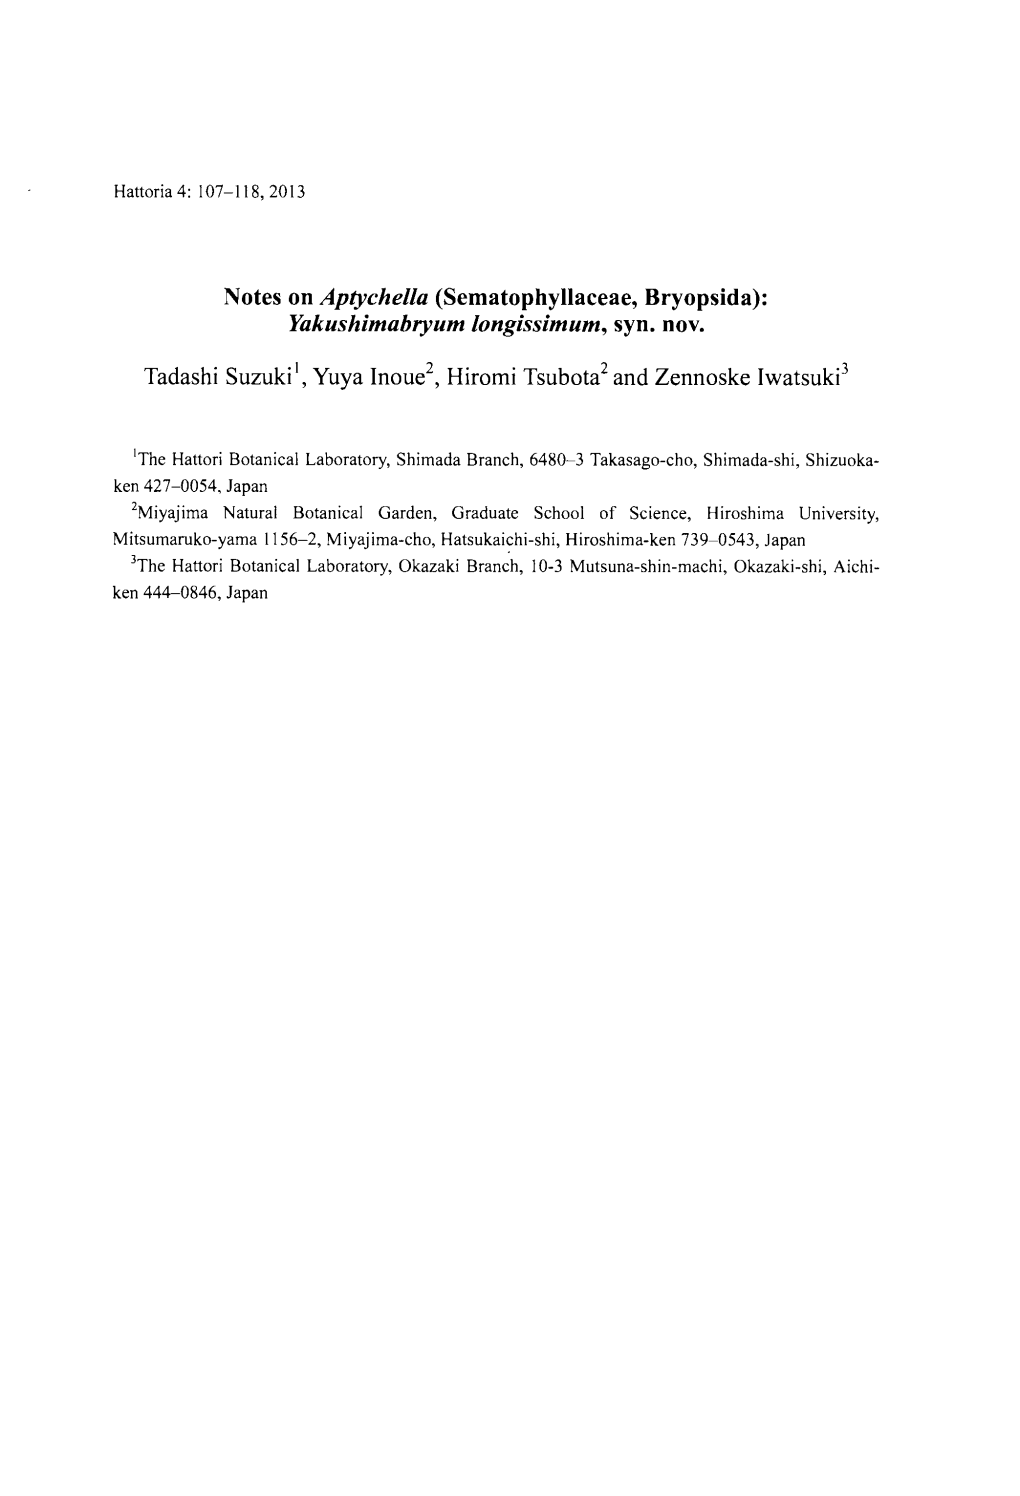 Notes on Aptychella (Sematophyllaceae, Bryopsida): Yakushimabryum Longissimum, Syn